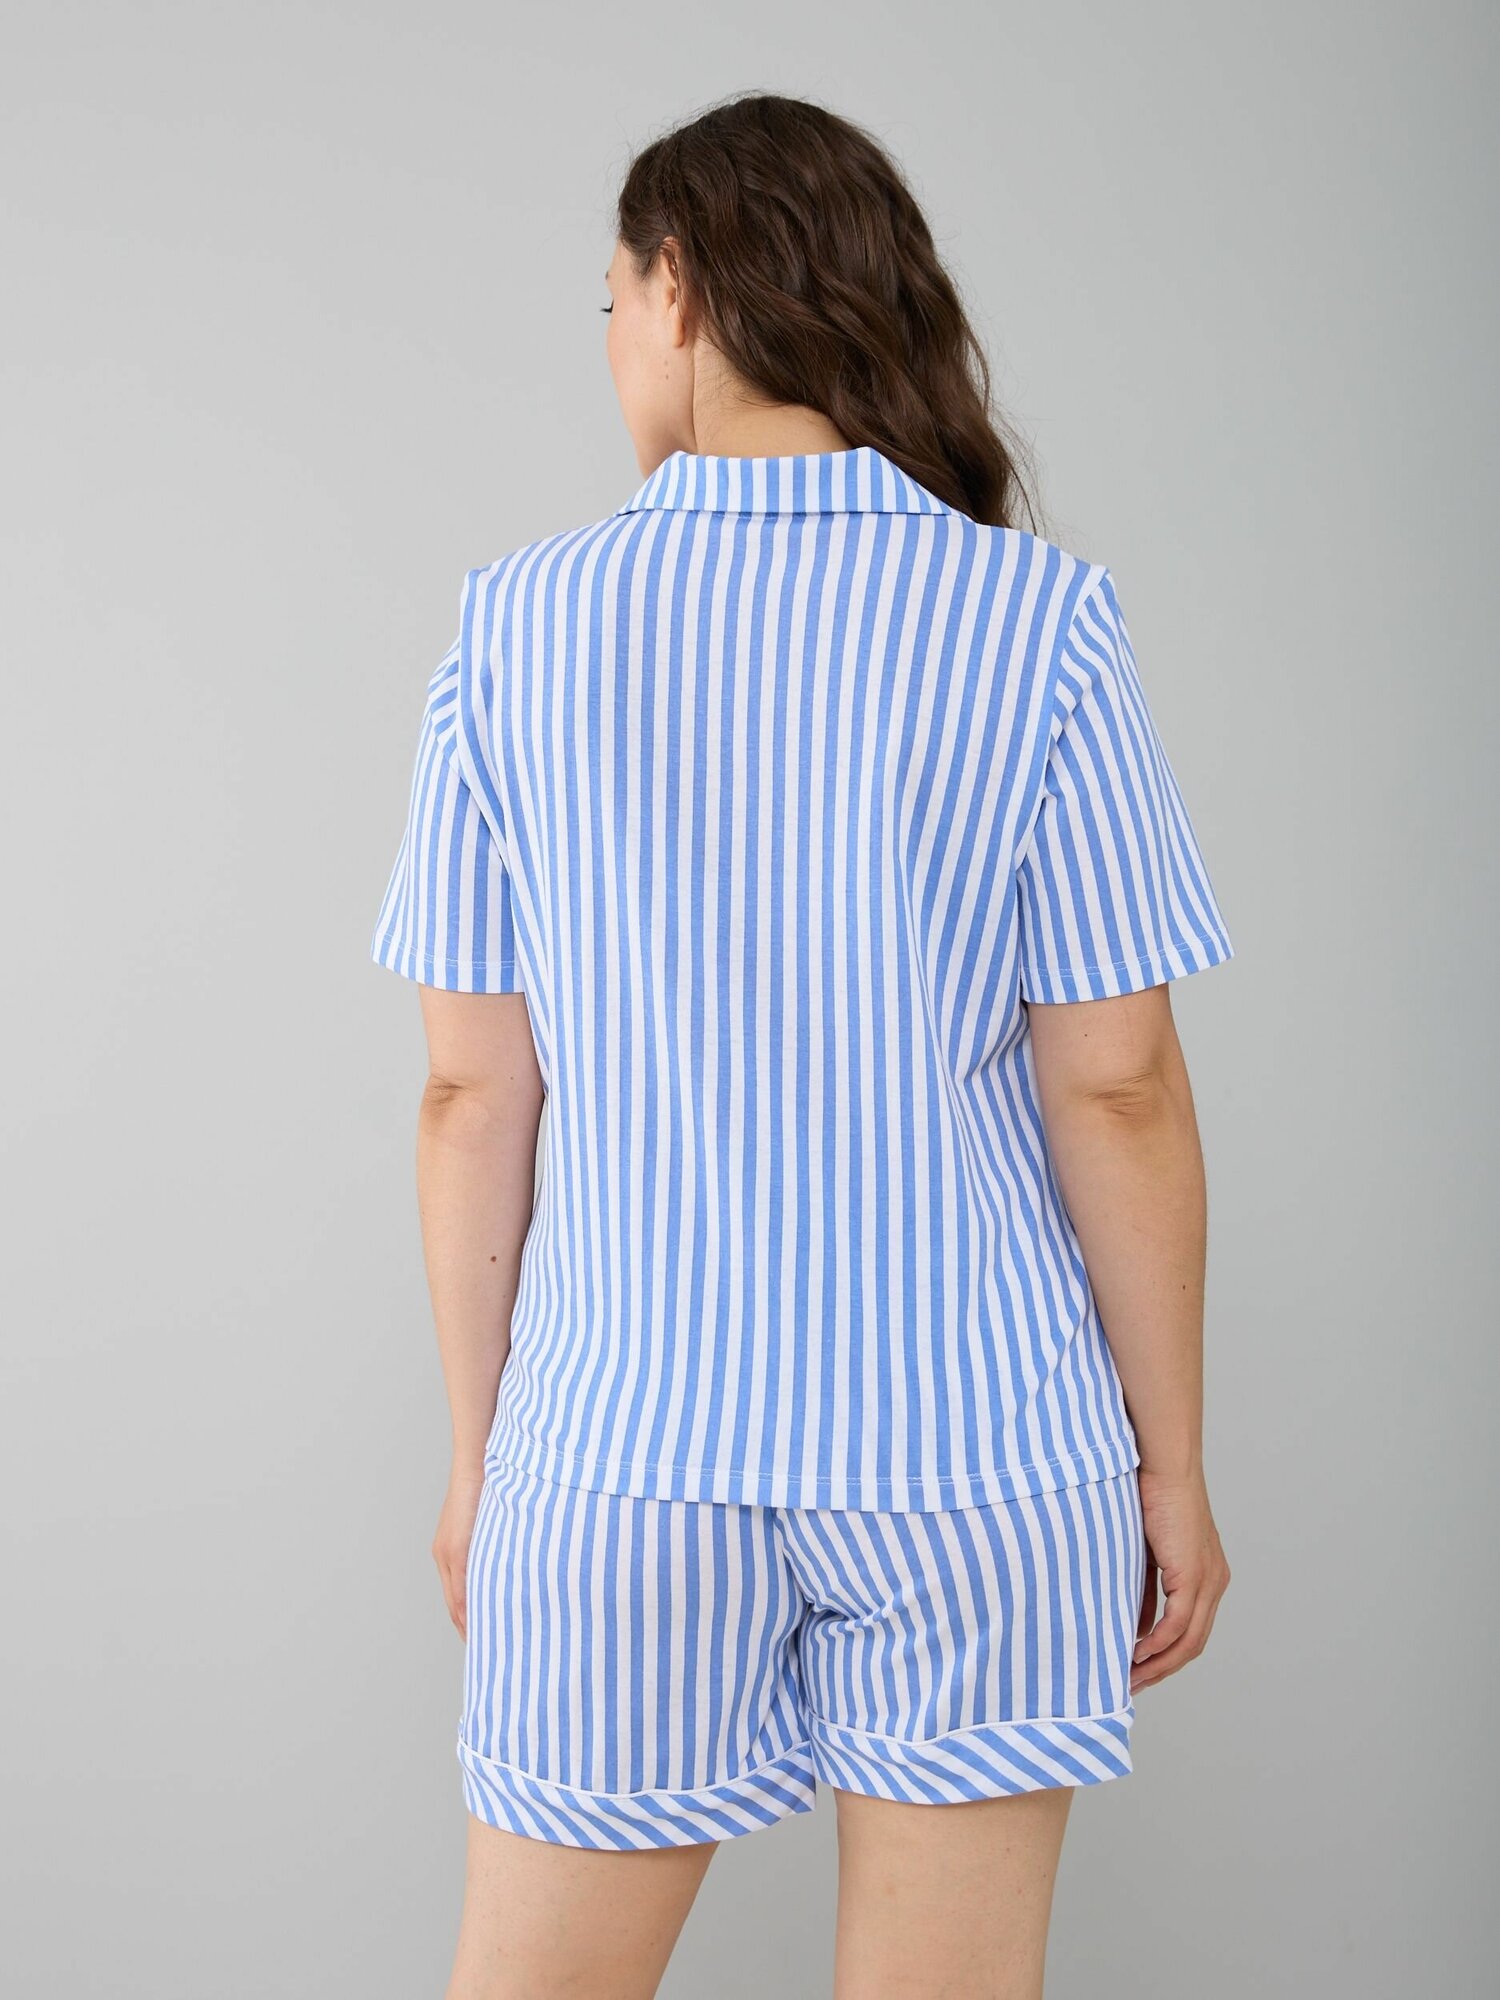 Домашняя женская пижама Алтекс с шортами и рубашкой голубая, размер 50 - фотография № 3